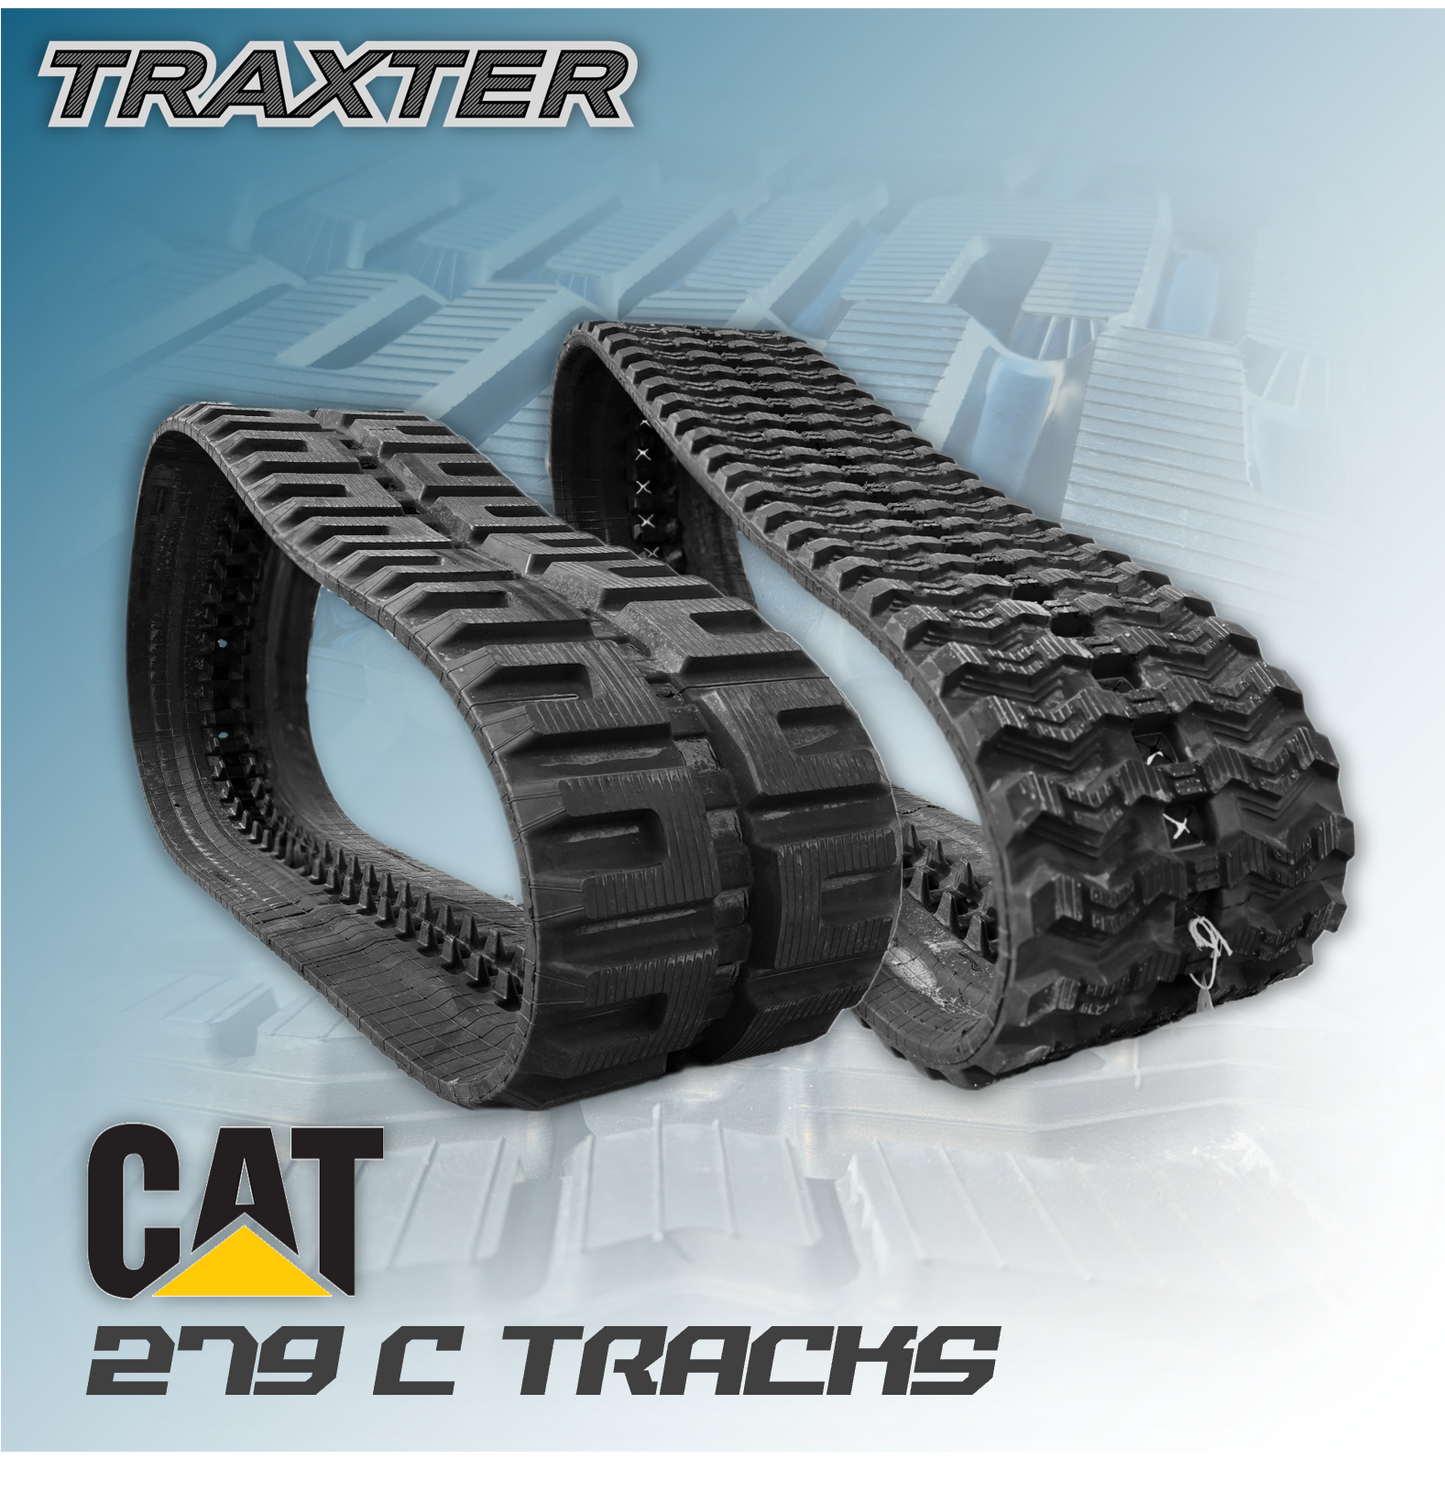 CAT 279C Tracks